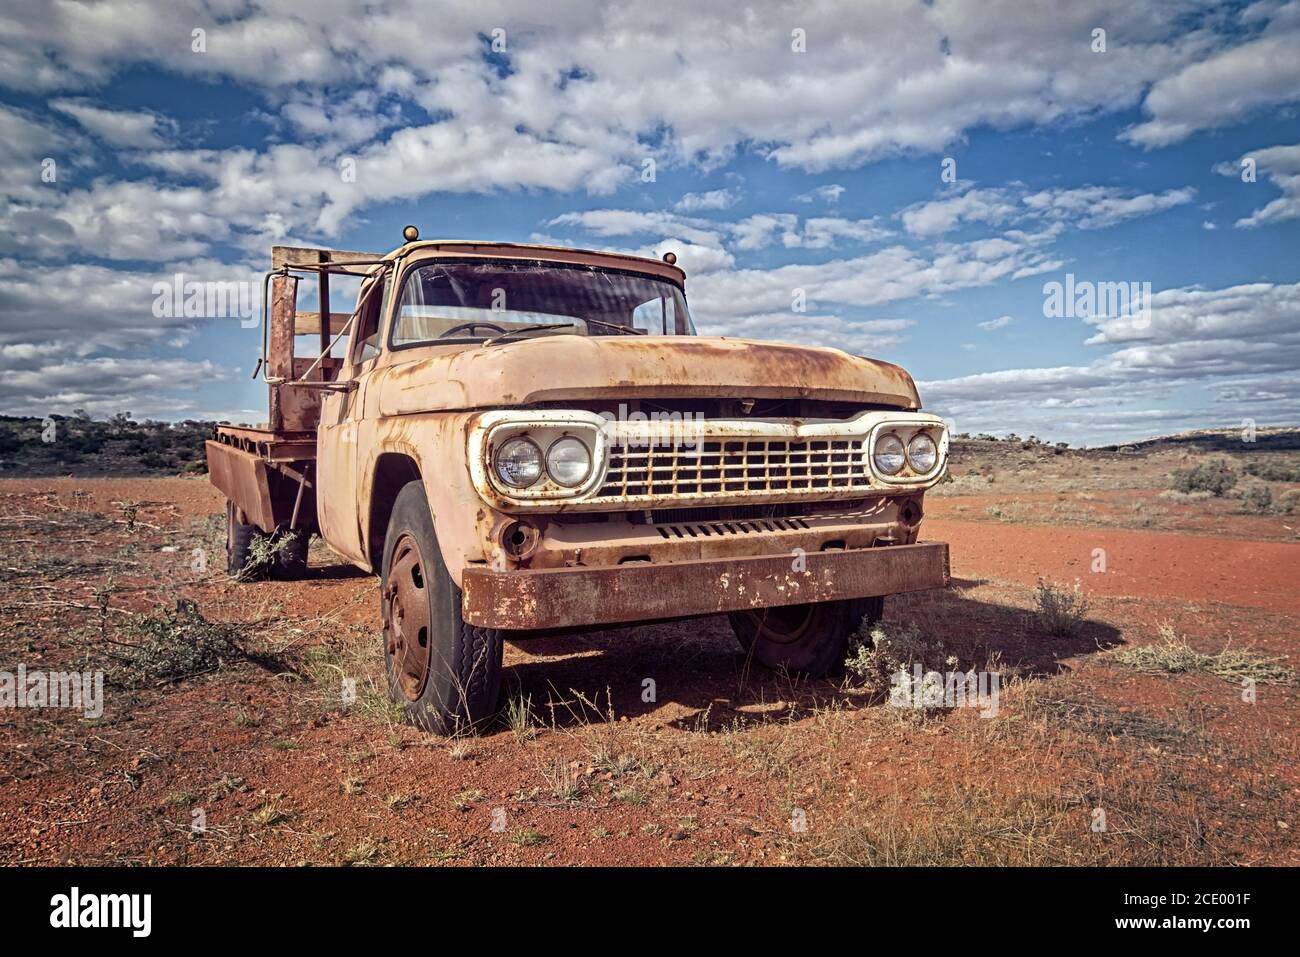 Australie – désert de l'Outback avec une vieille voiture abandonnée près de la piste sous ciel nuageux Banque D'Images